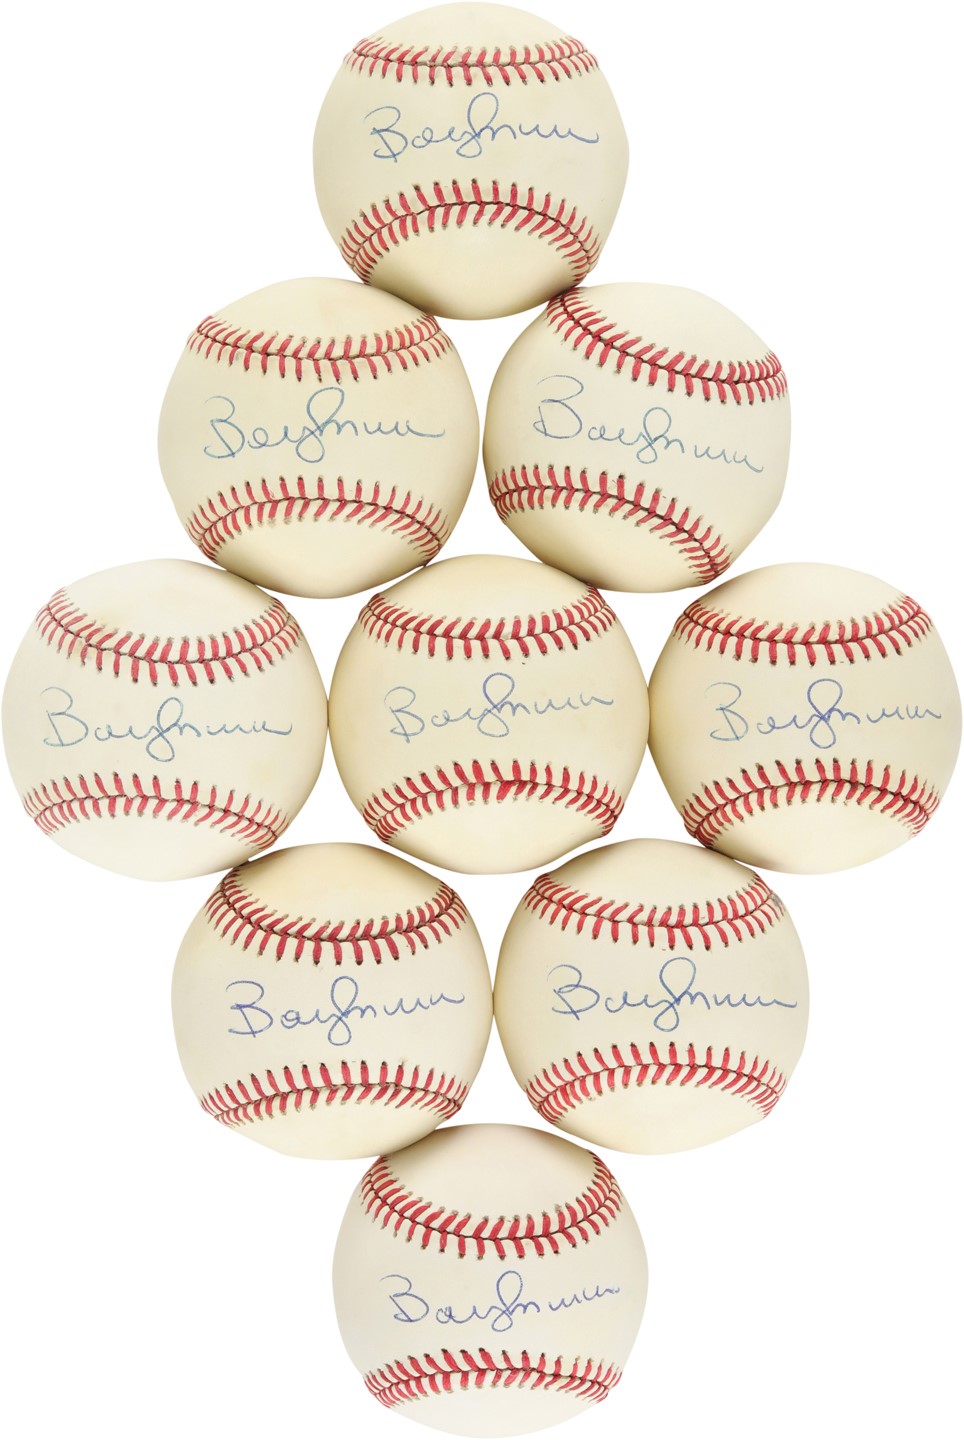 Baseball Autographs - Bobby Murcer Single-Signed Baseballs (9)